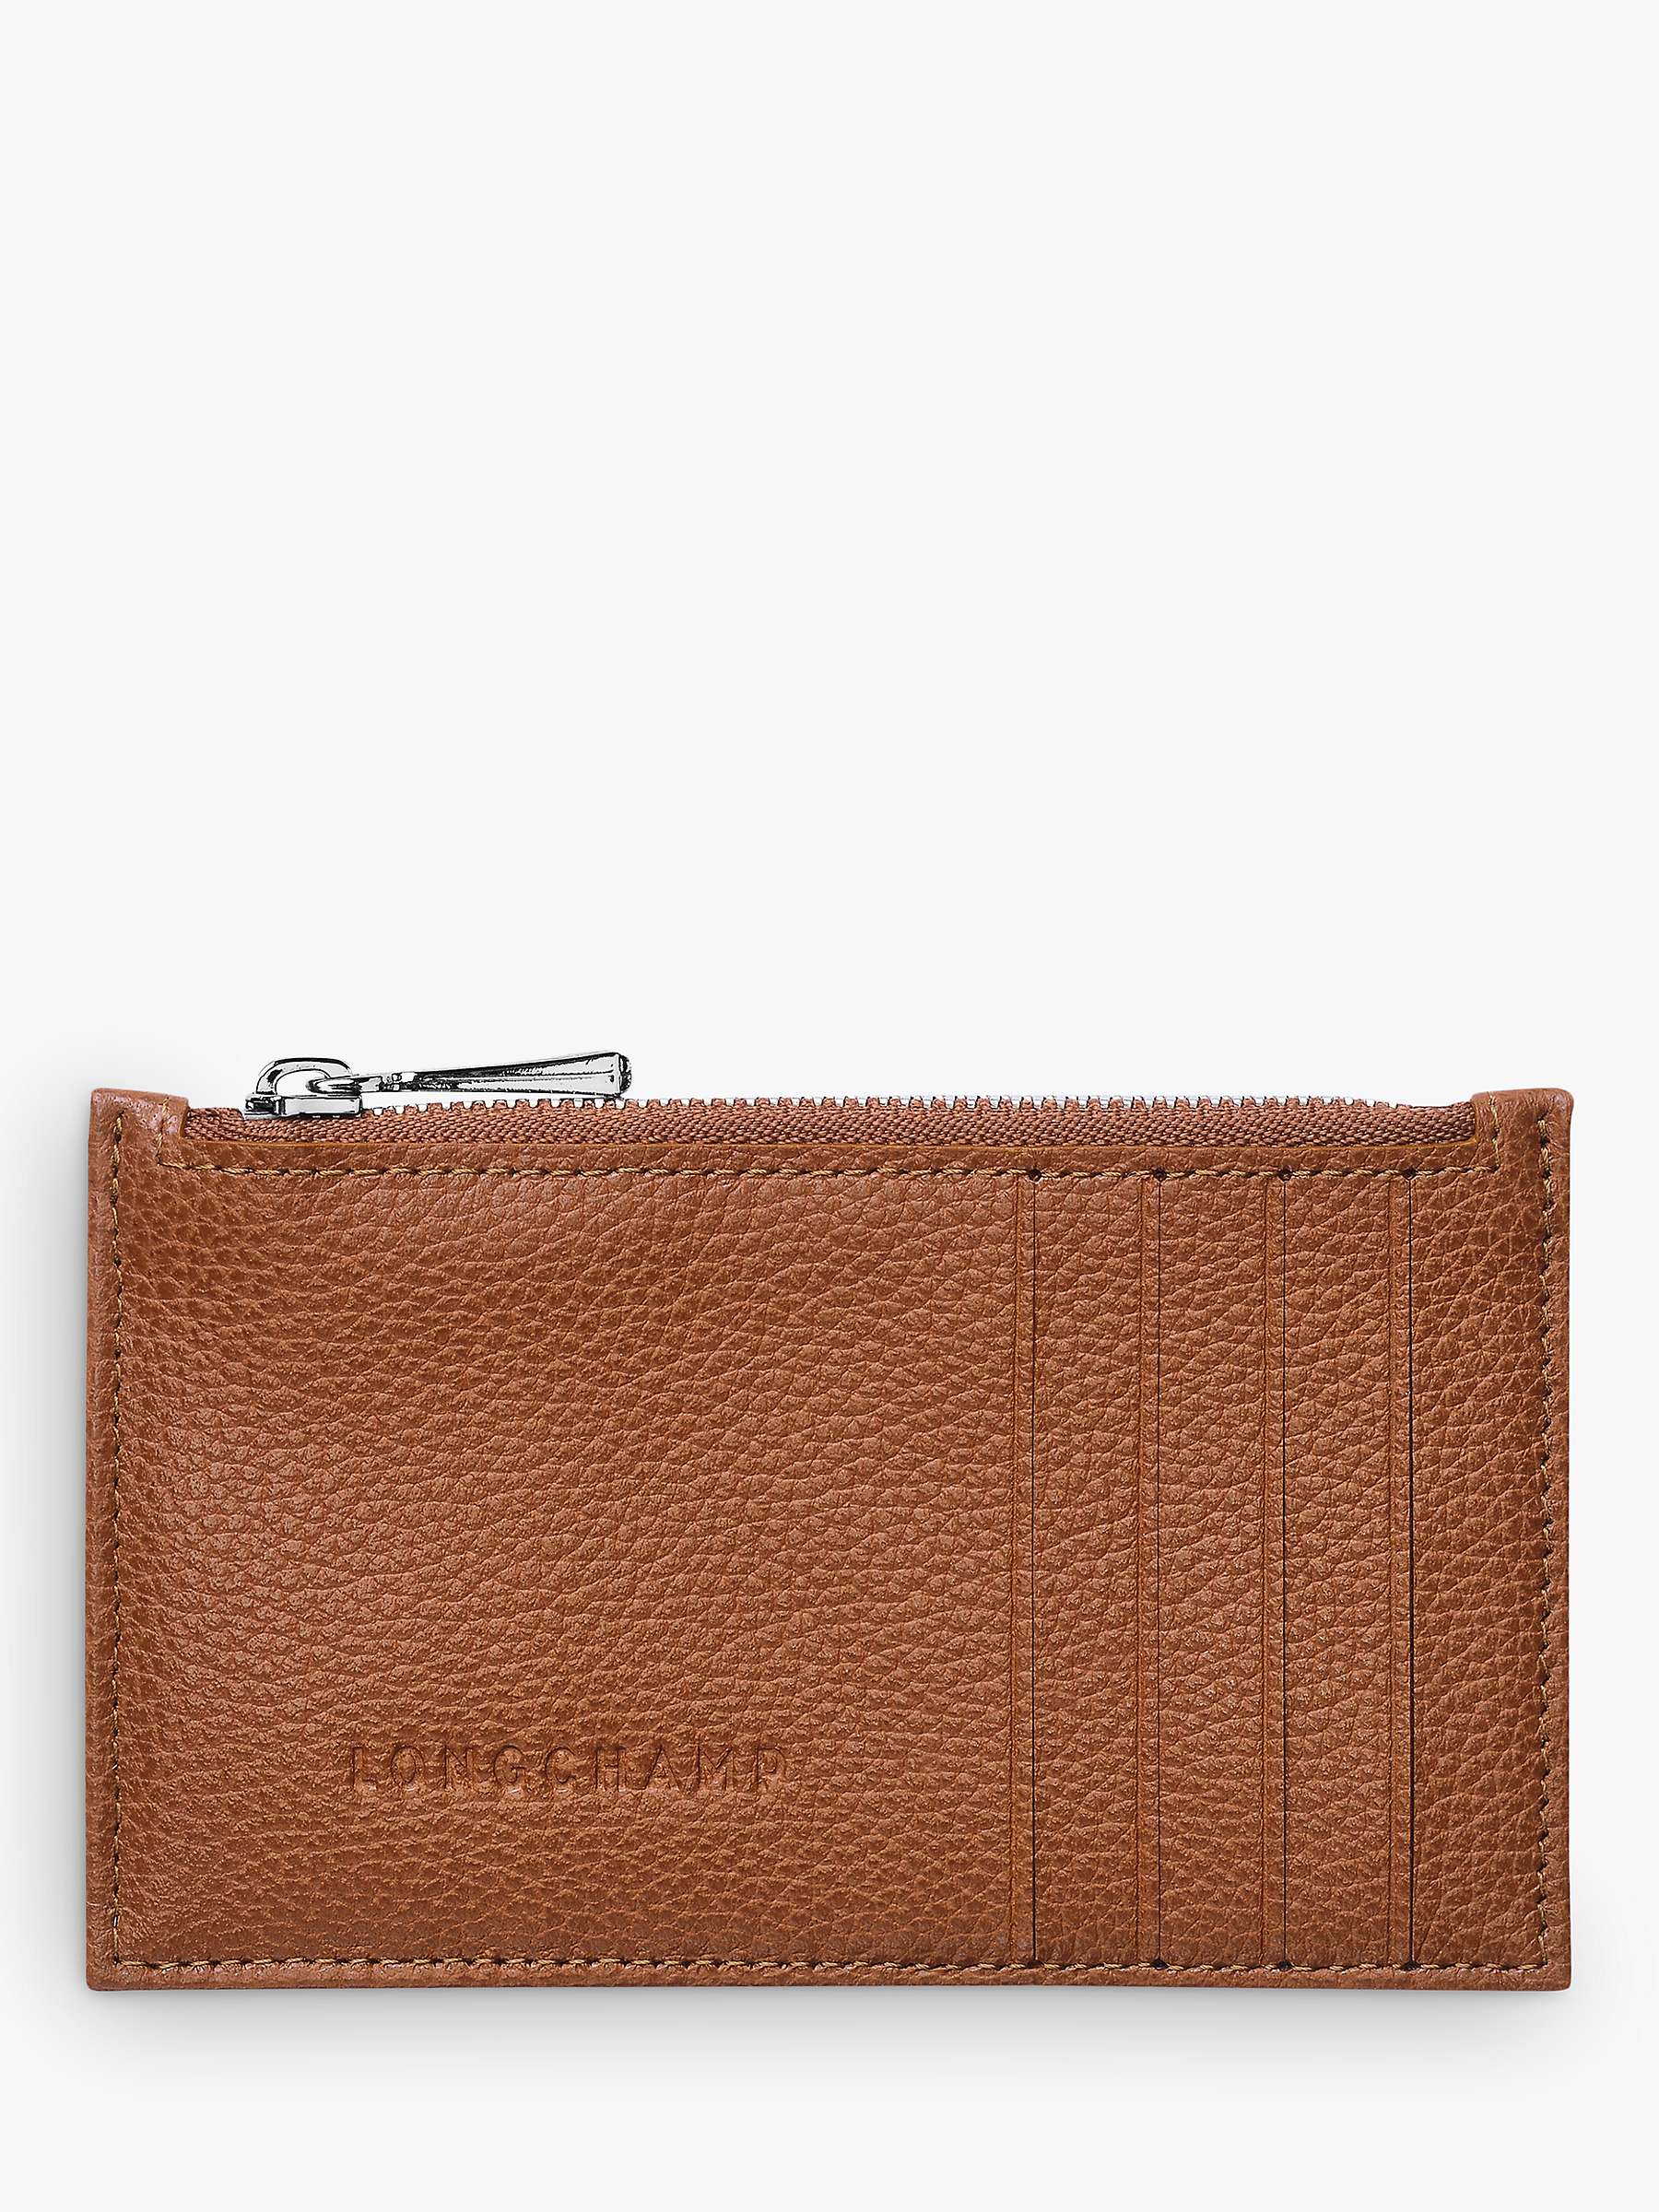 Longchamp Le Foulonné Leather Coin Purse, Caramel at John Lewis & Partners